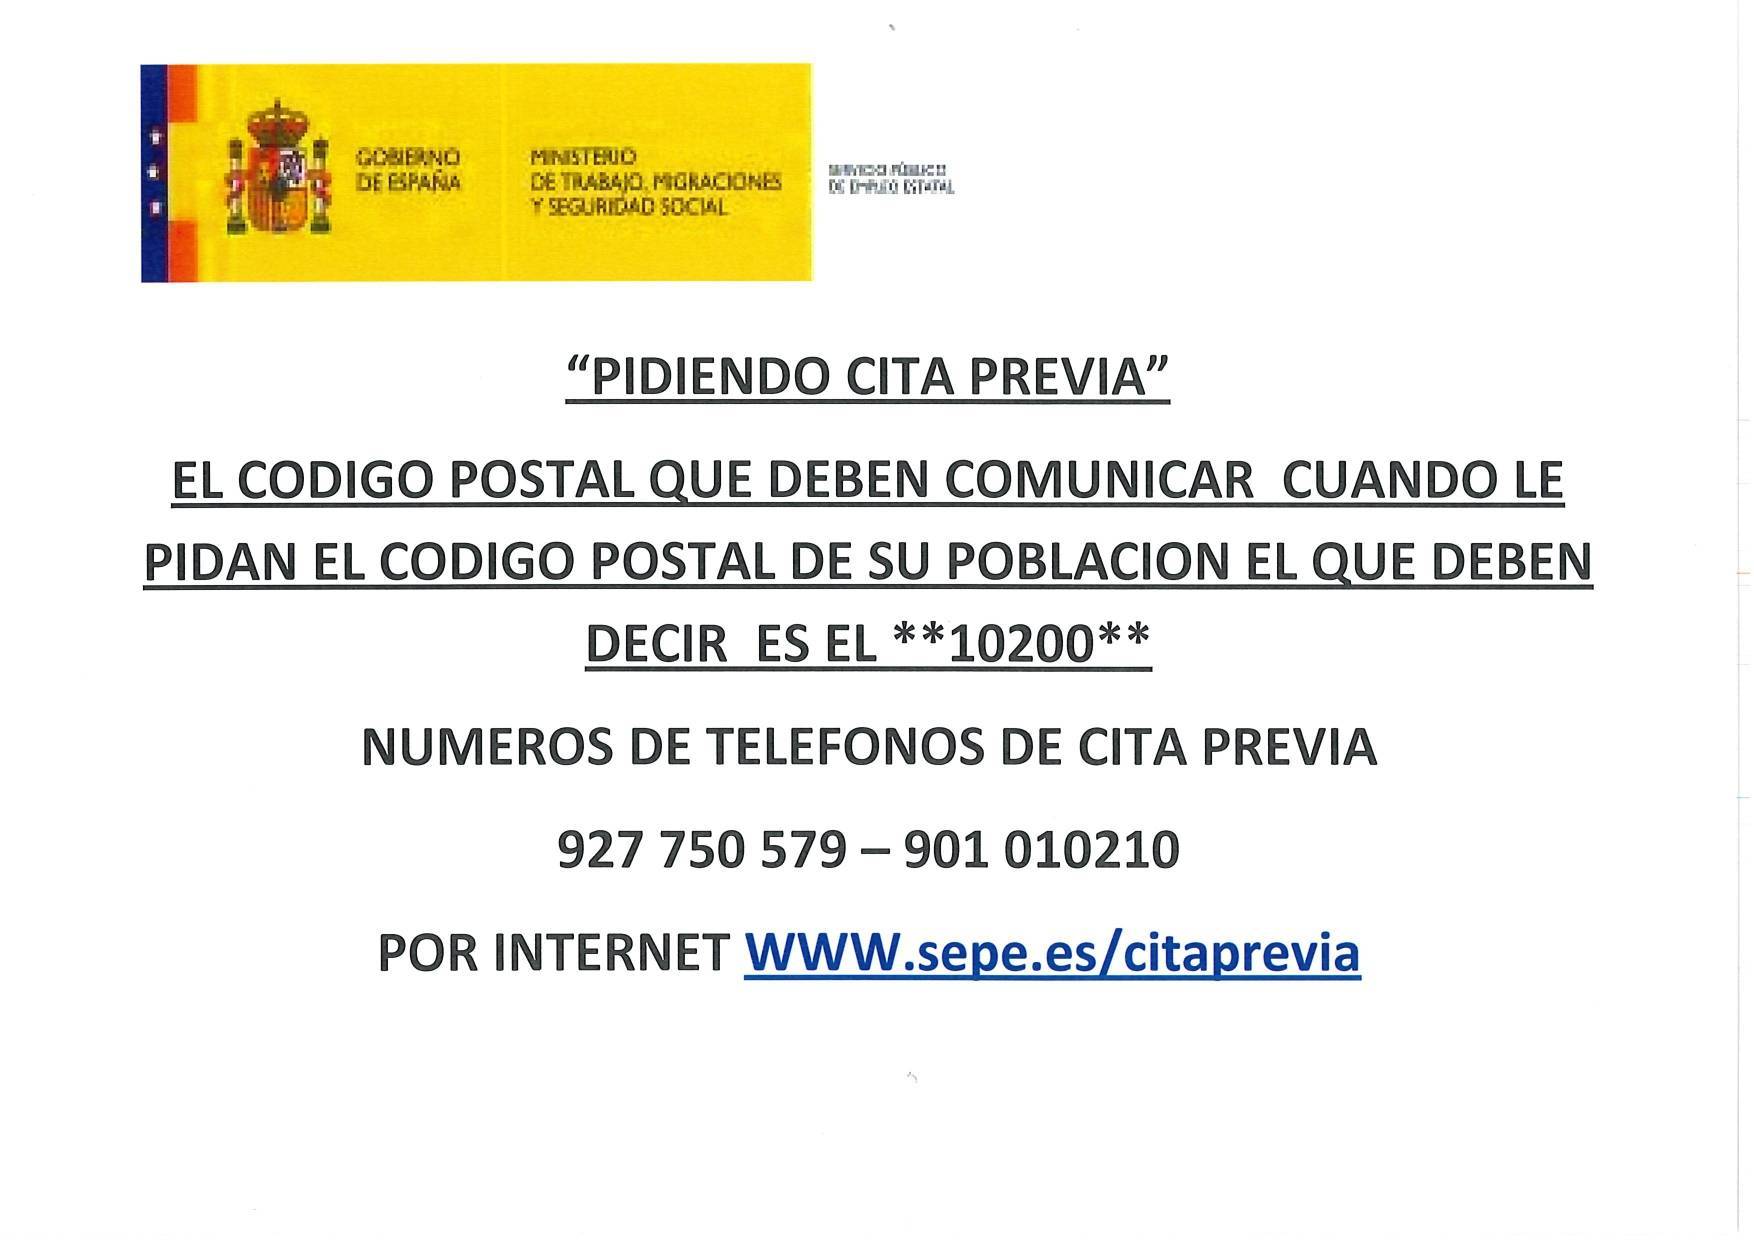 Oficina del SEPE cerrada octubre 2019 - Cañamero (Cáceres) 2